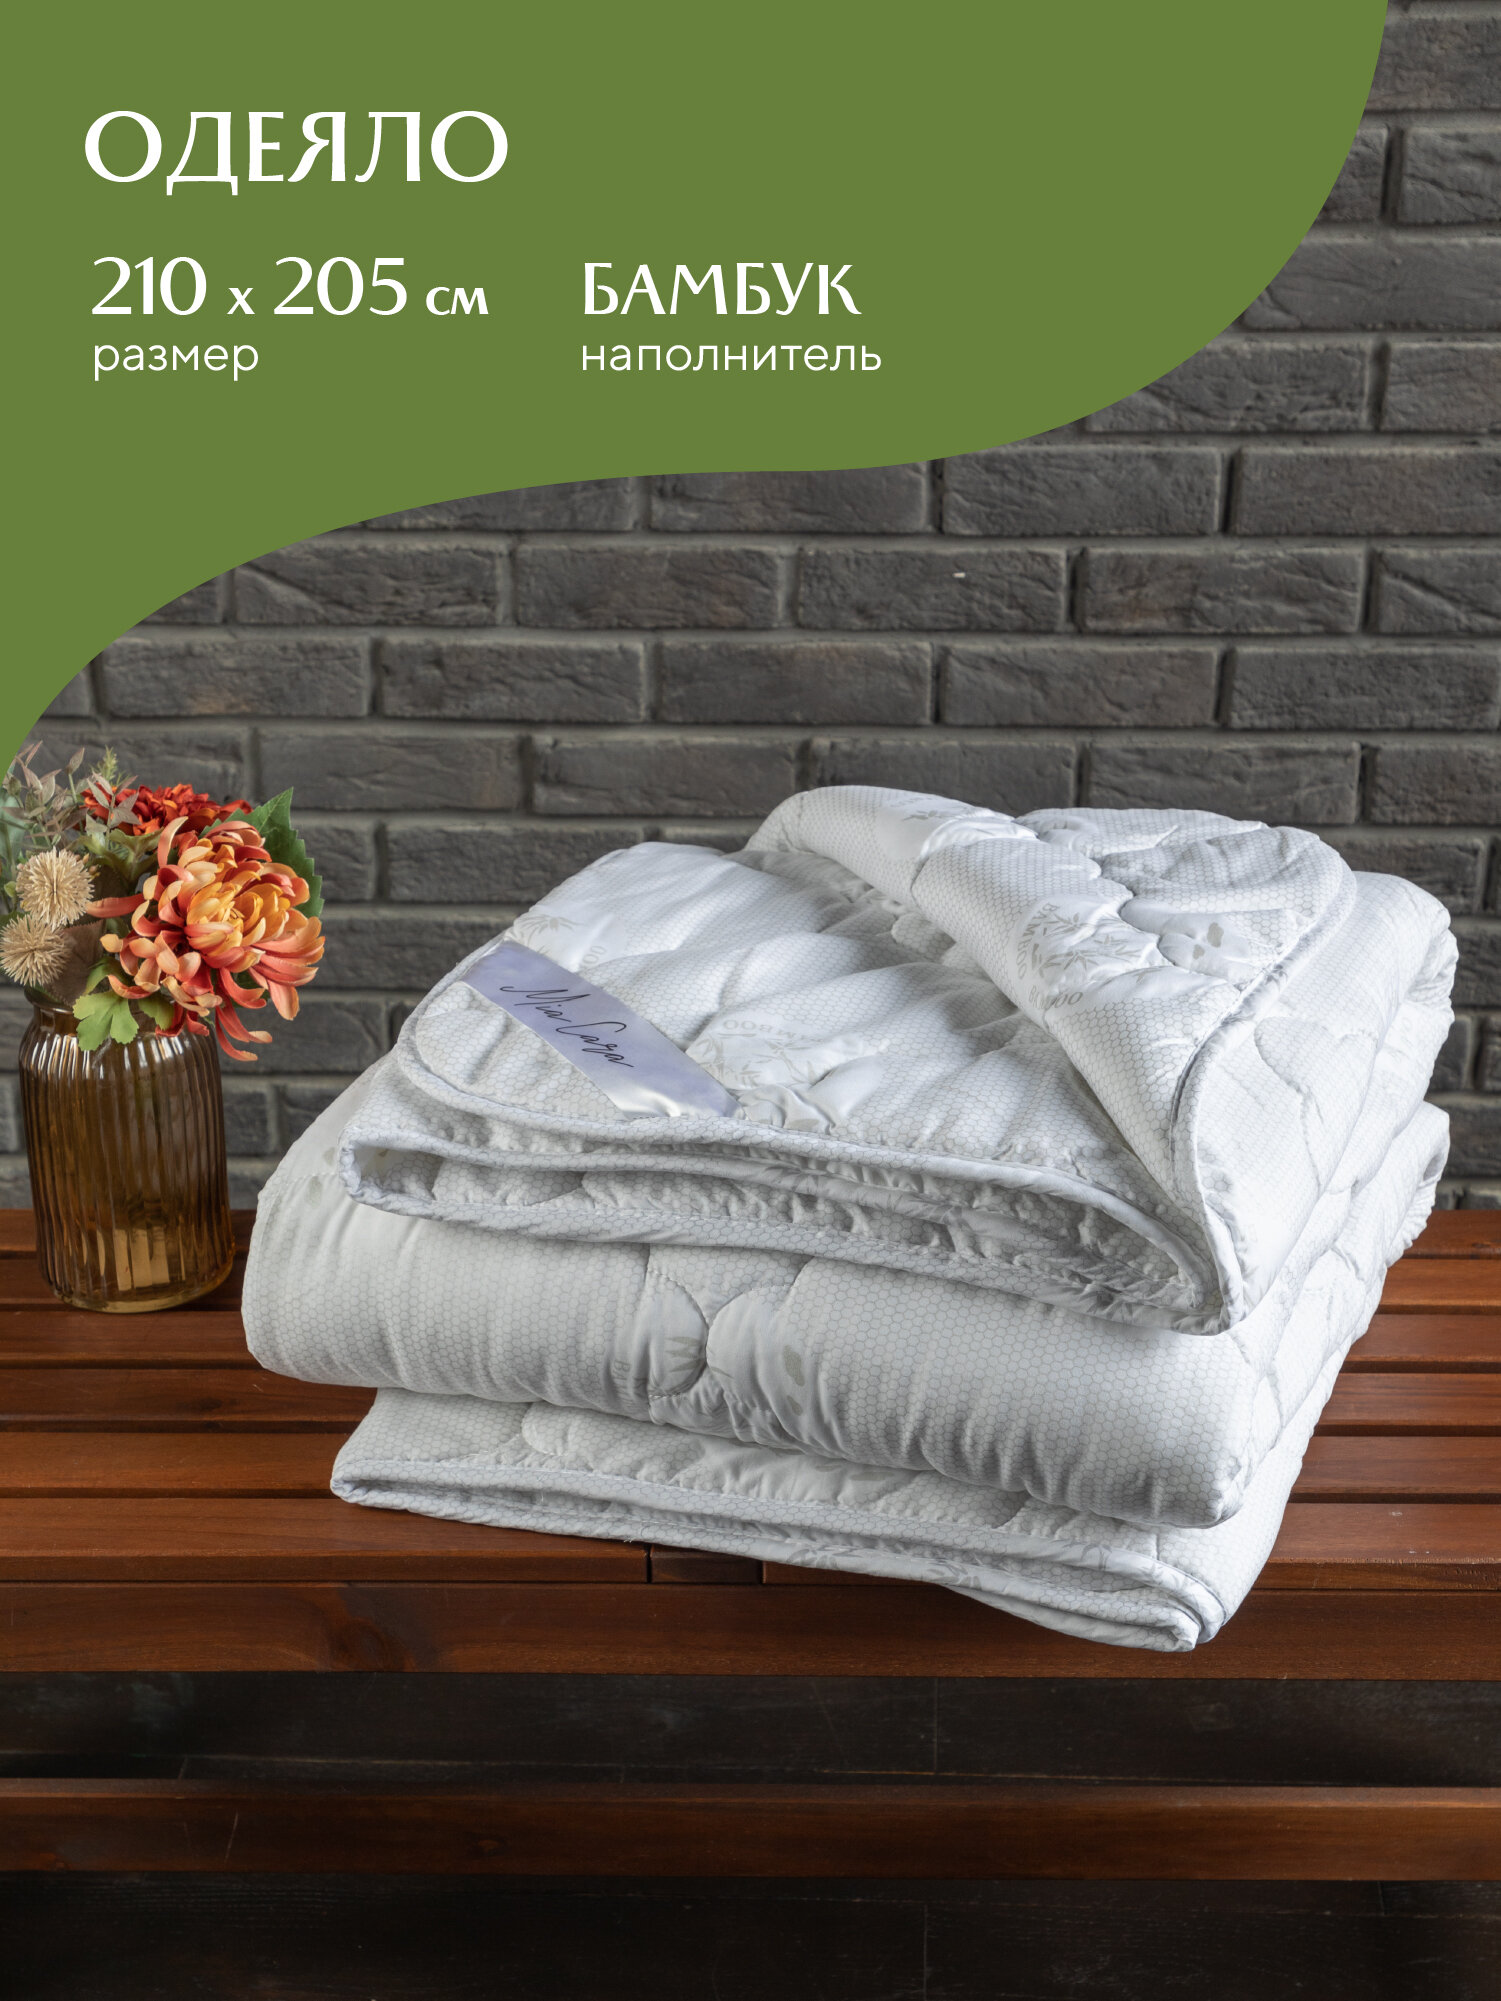 Одеяло /одеяло 210*205 зимнее / летнее одеяло / одеяло евро летнее / одеяло зимнее / одеяло шерстяное тяжелое "Mia Cara" Bellasonno 210x205 бамбук